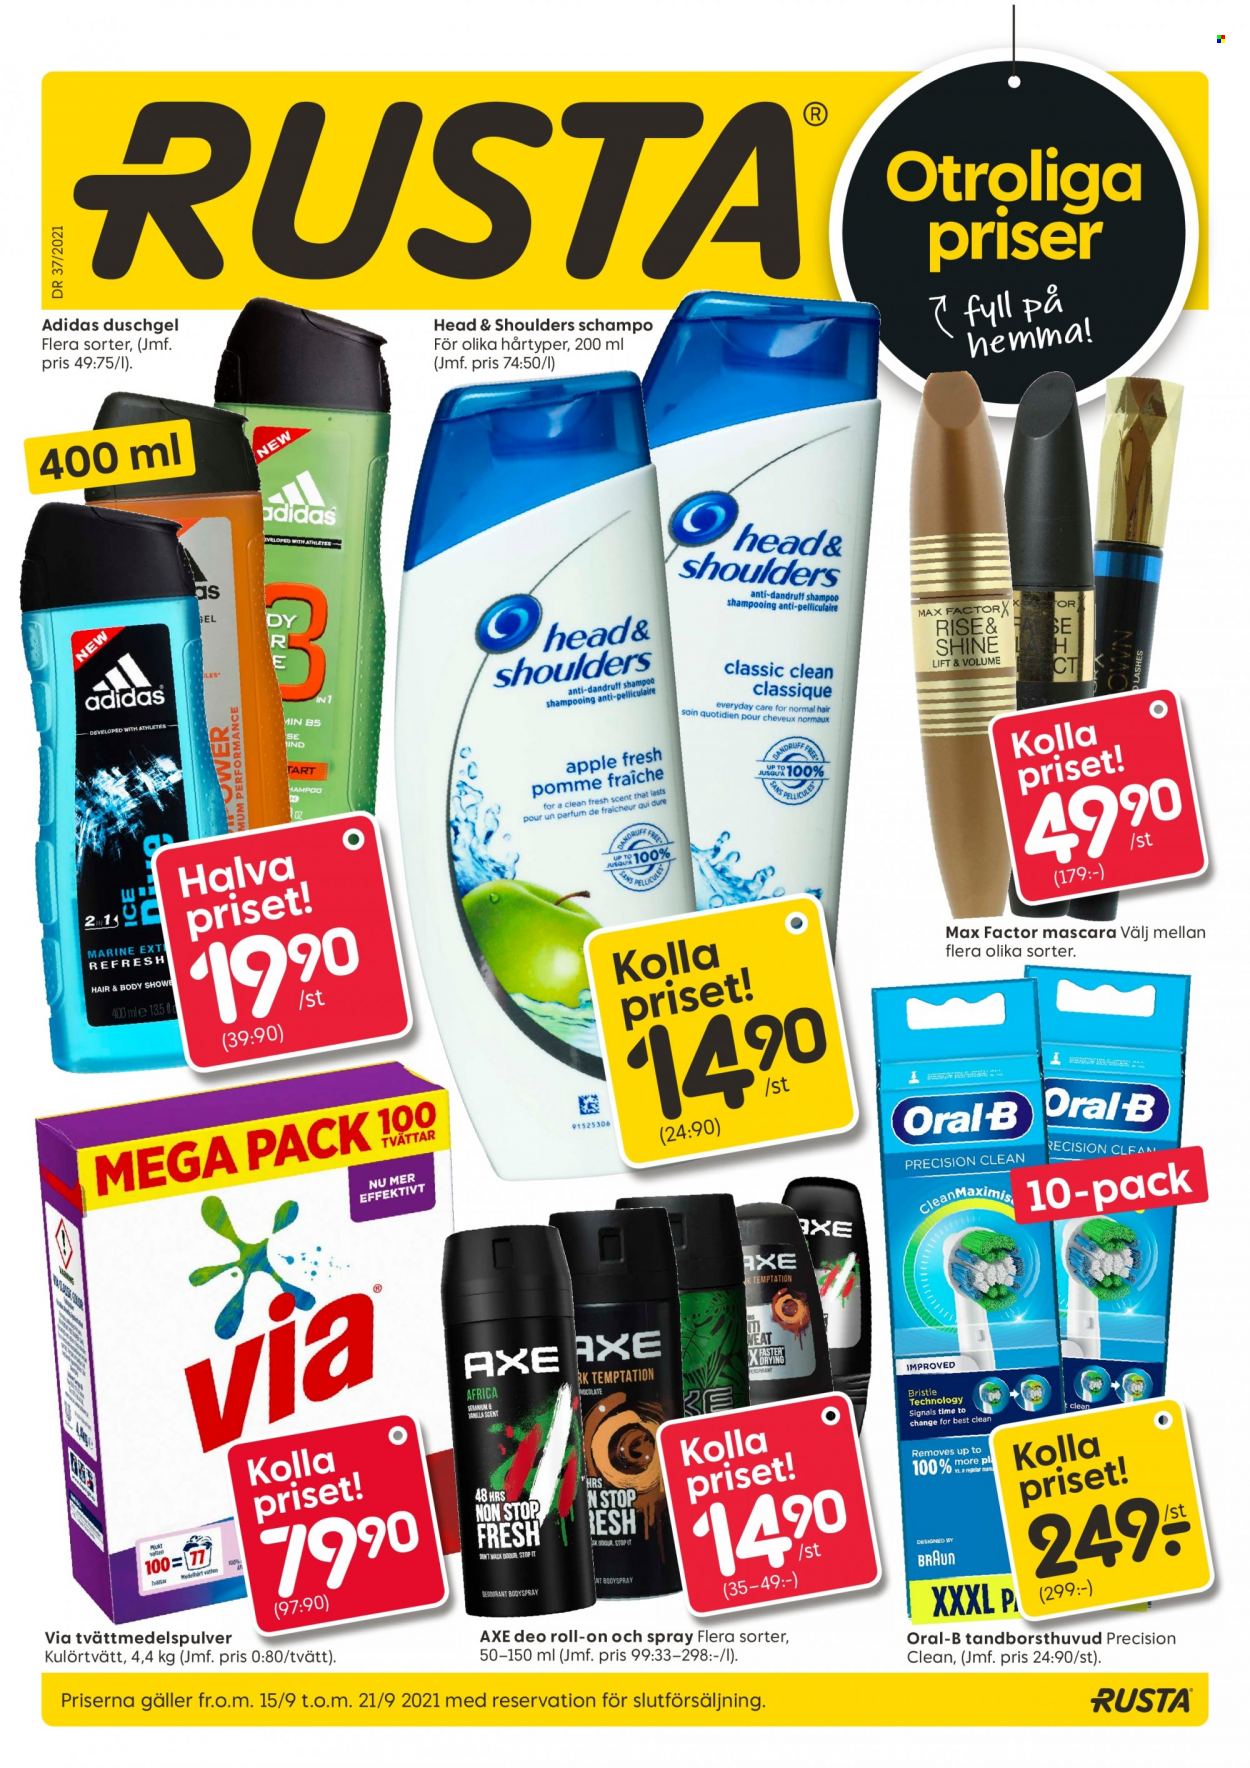 thumbnail - Rusta reklamblad - 15/9 2021 - 21/9 2021 - varor från reklamblad - Braun, shampoo, schampo, Oral-B, mask, roll-on, Head & Shoulders, AXE, deodorant, Max Factor. Sida 1.